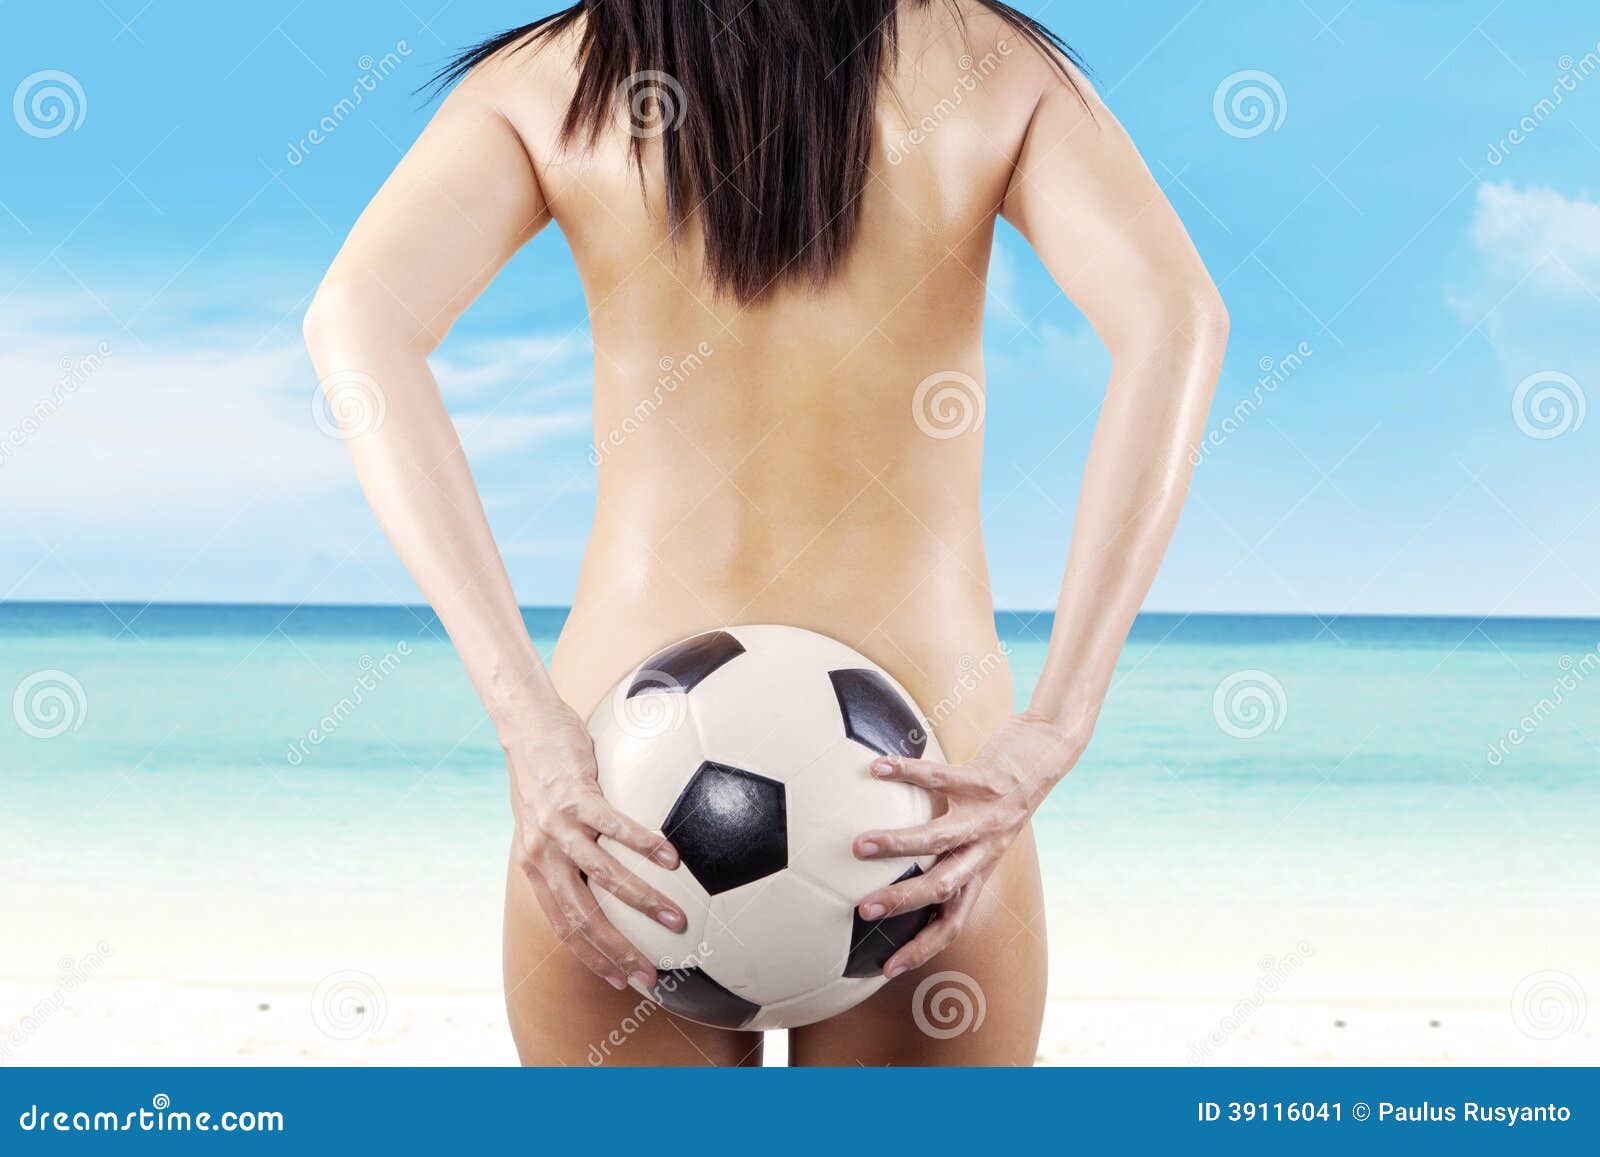 Mujer Desnuda Con Un Balón De Fútbol En La Playa Imagen de archivo - Imagen  de balompié, lifestyle: 39116041